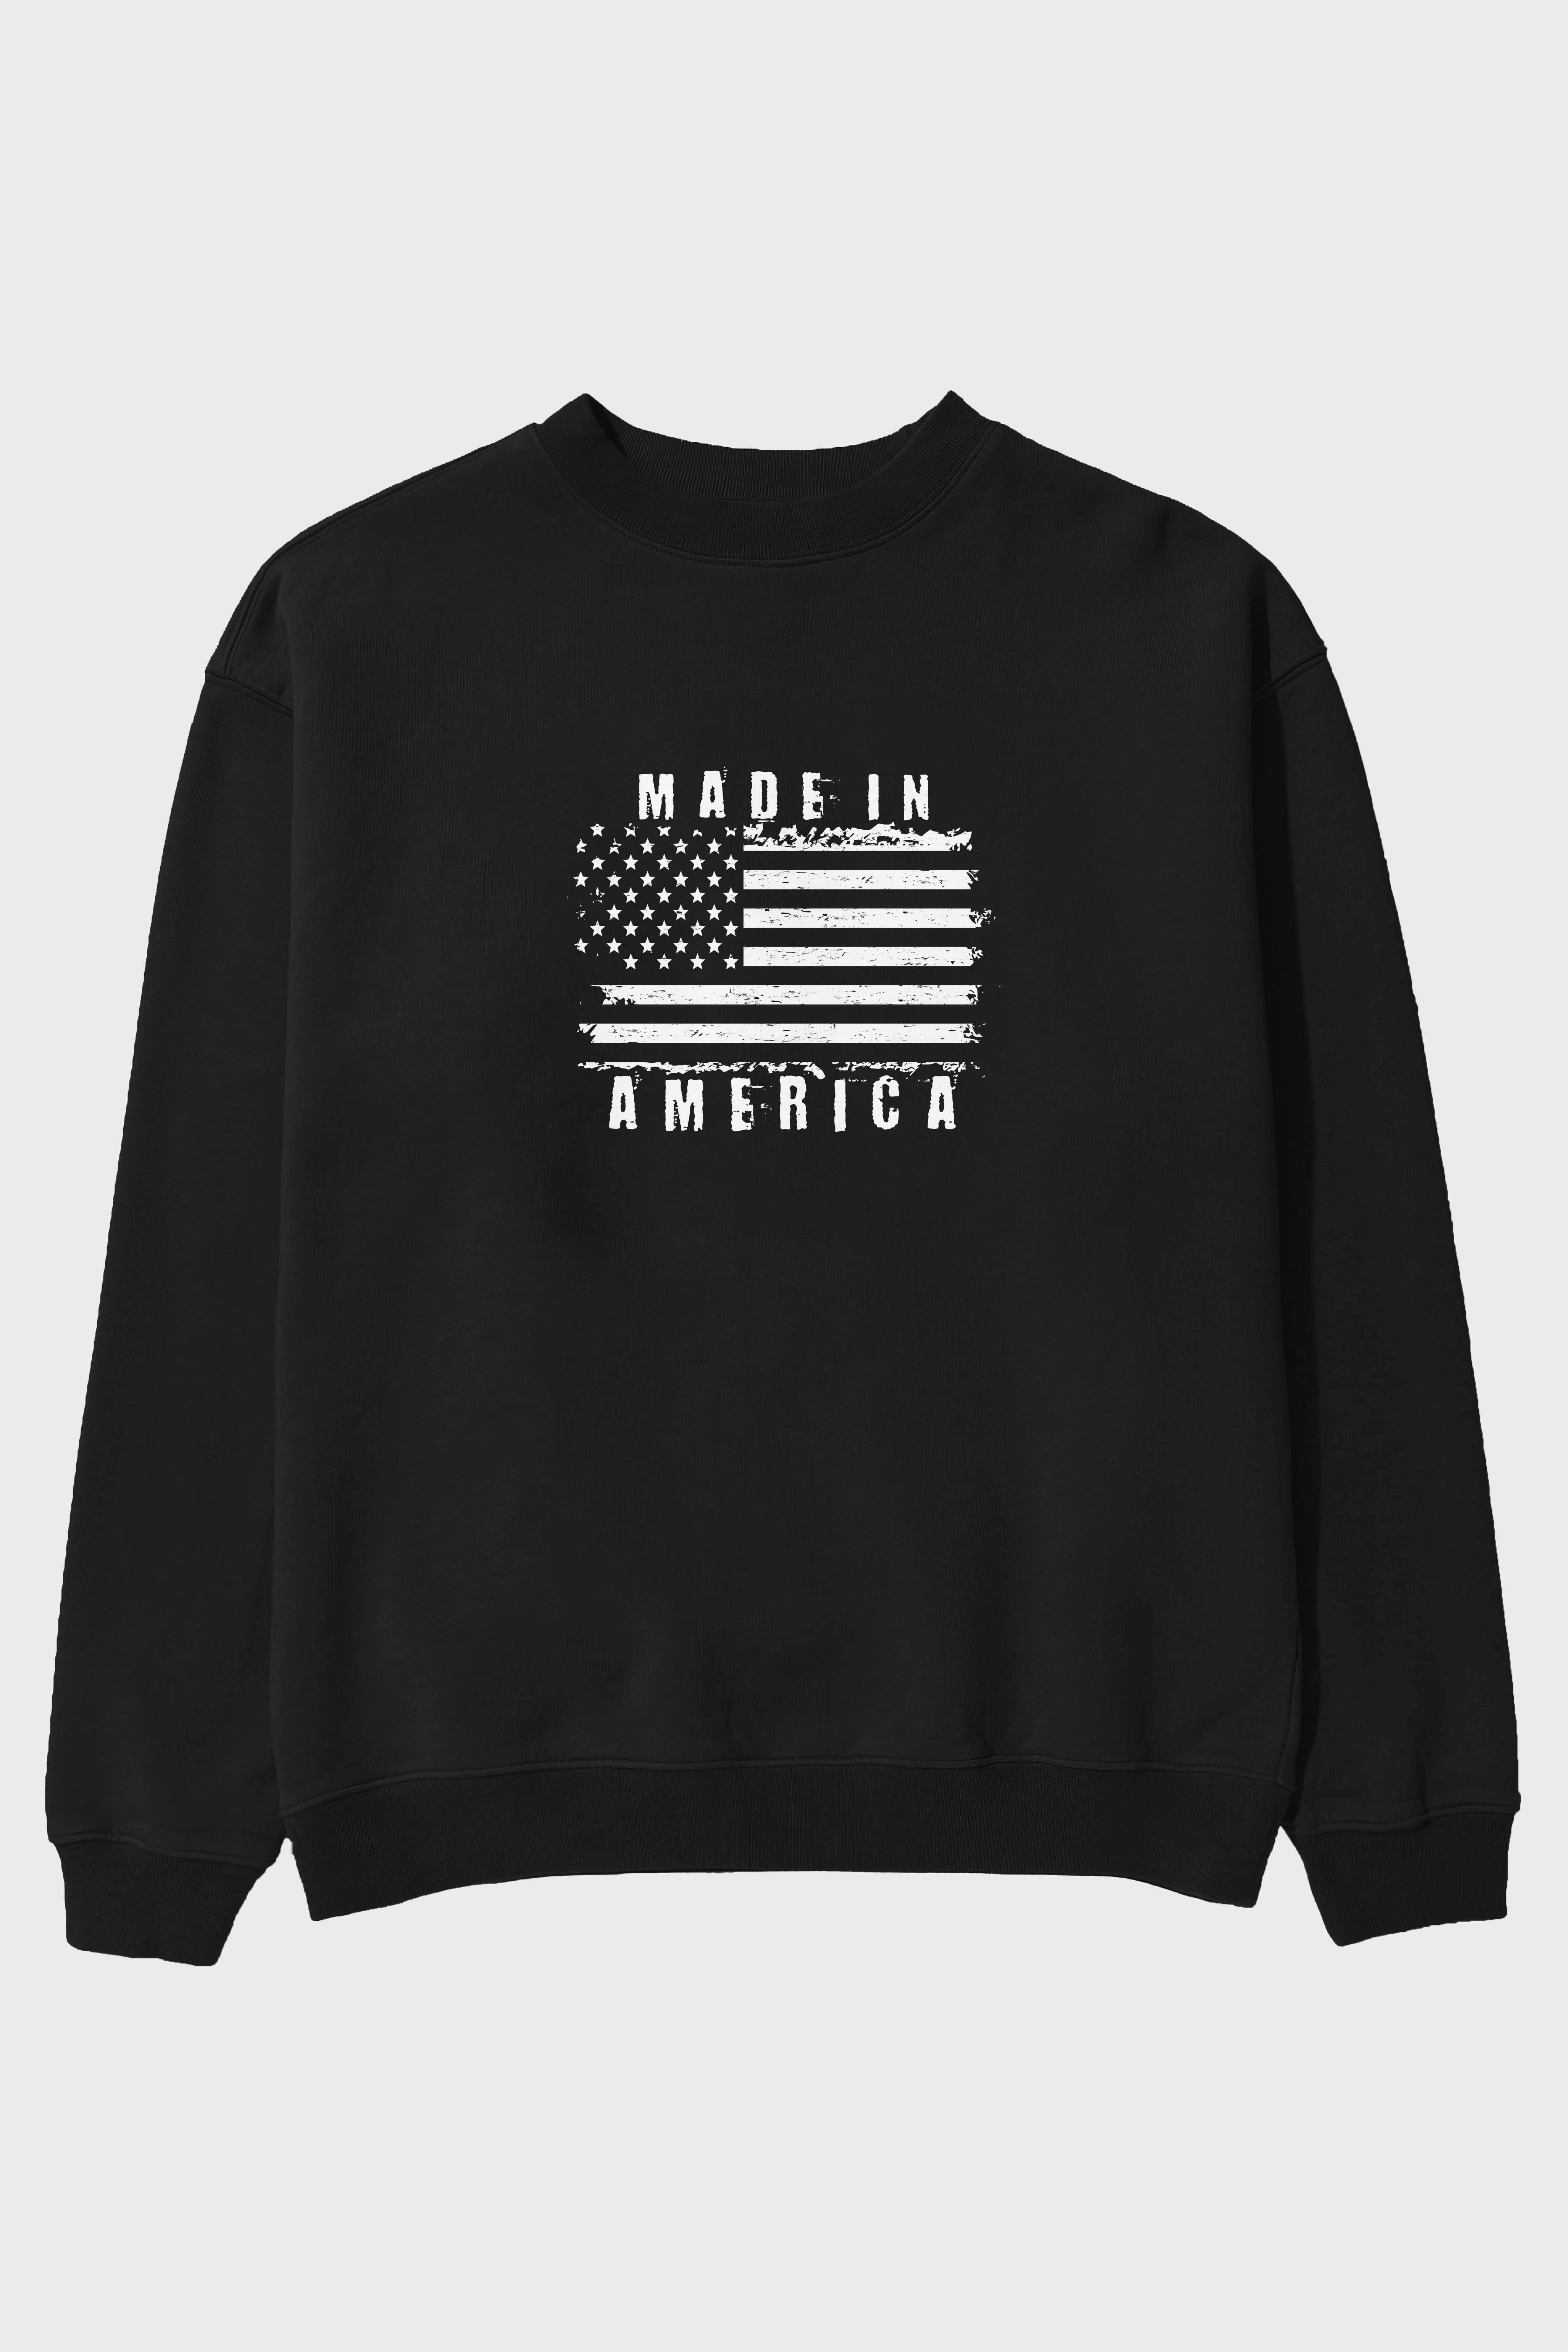 Made in America Ön Baskılı Oversize Sweatshirt Erkek Kadın Unisex